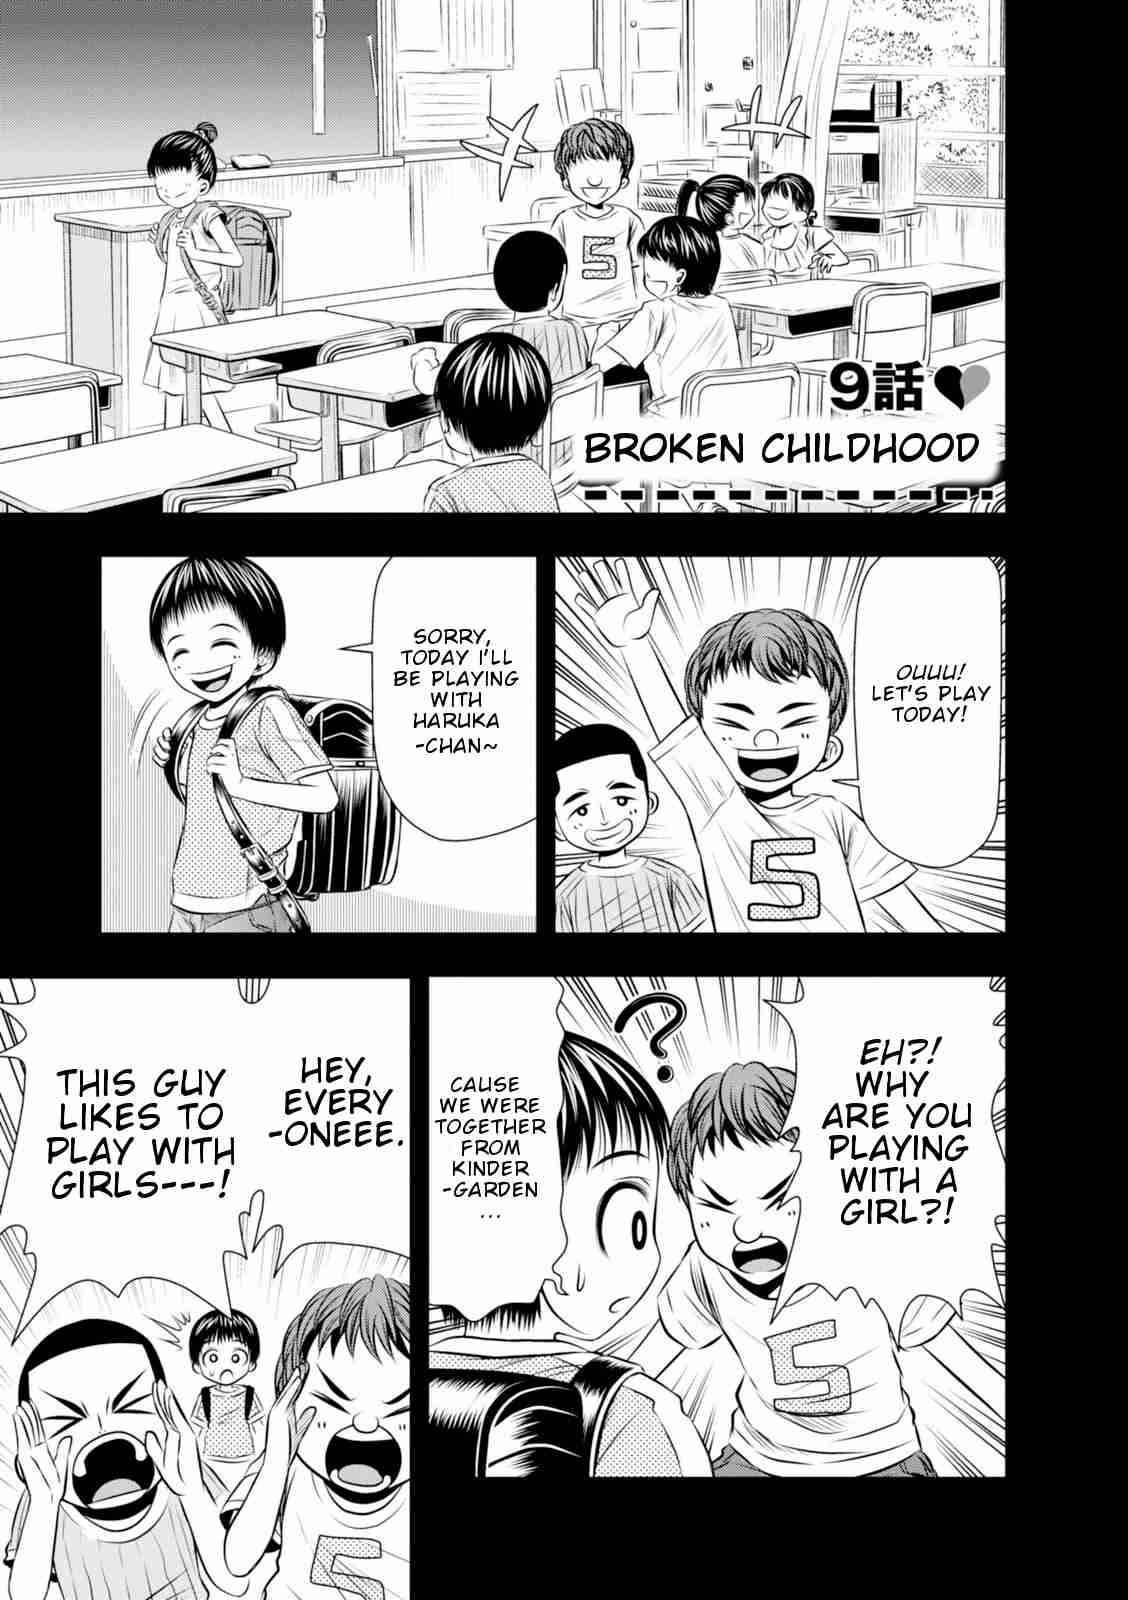 Umareru Seibetsu wo Machigaeta! Vol. 1 Ch. 9 Broken Childhood